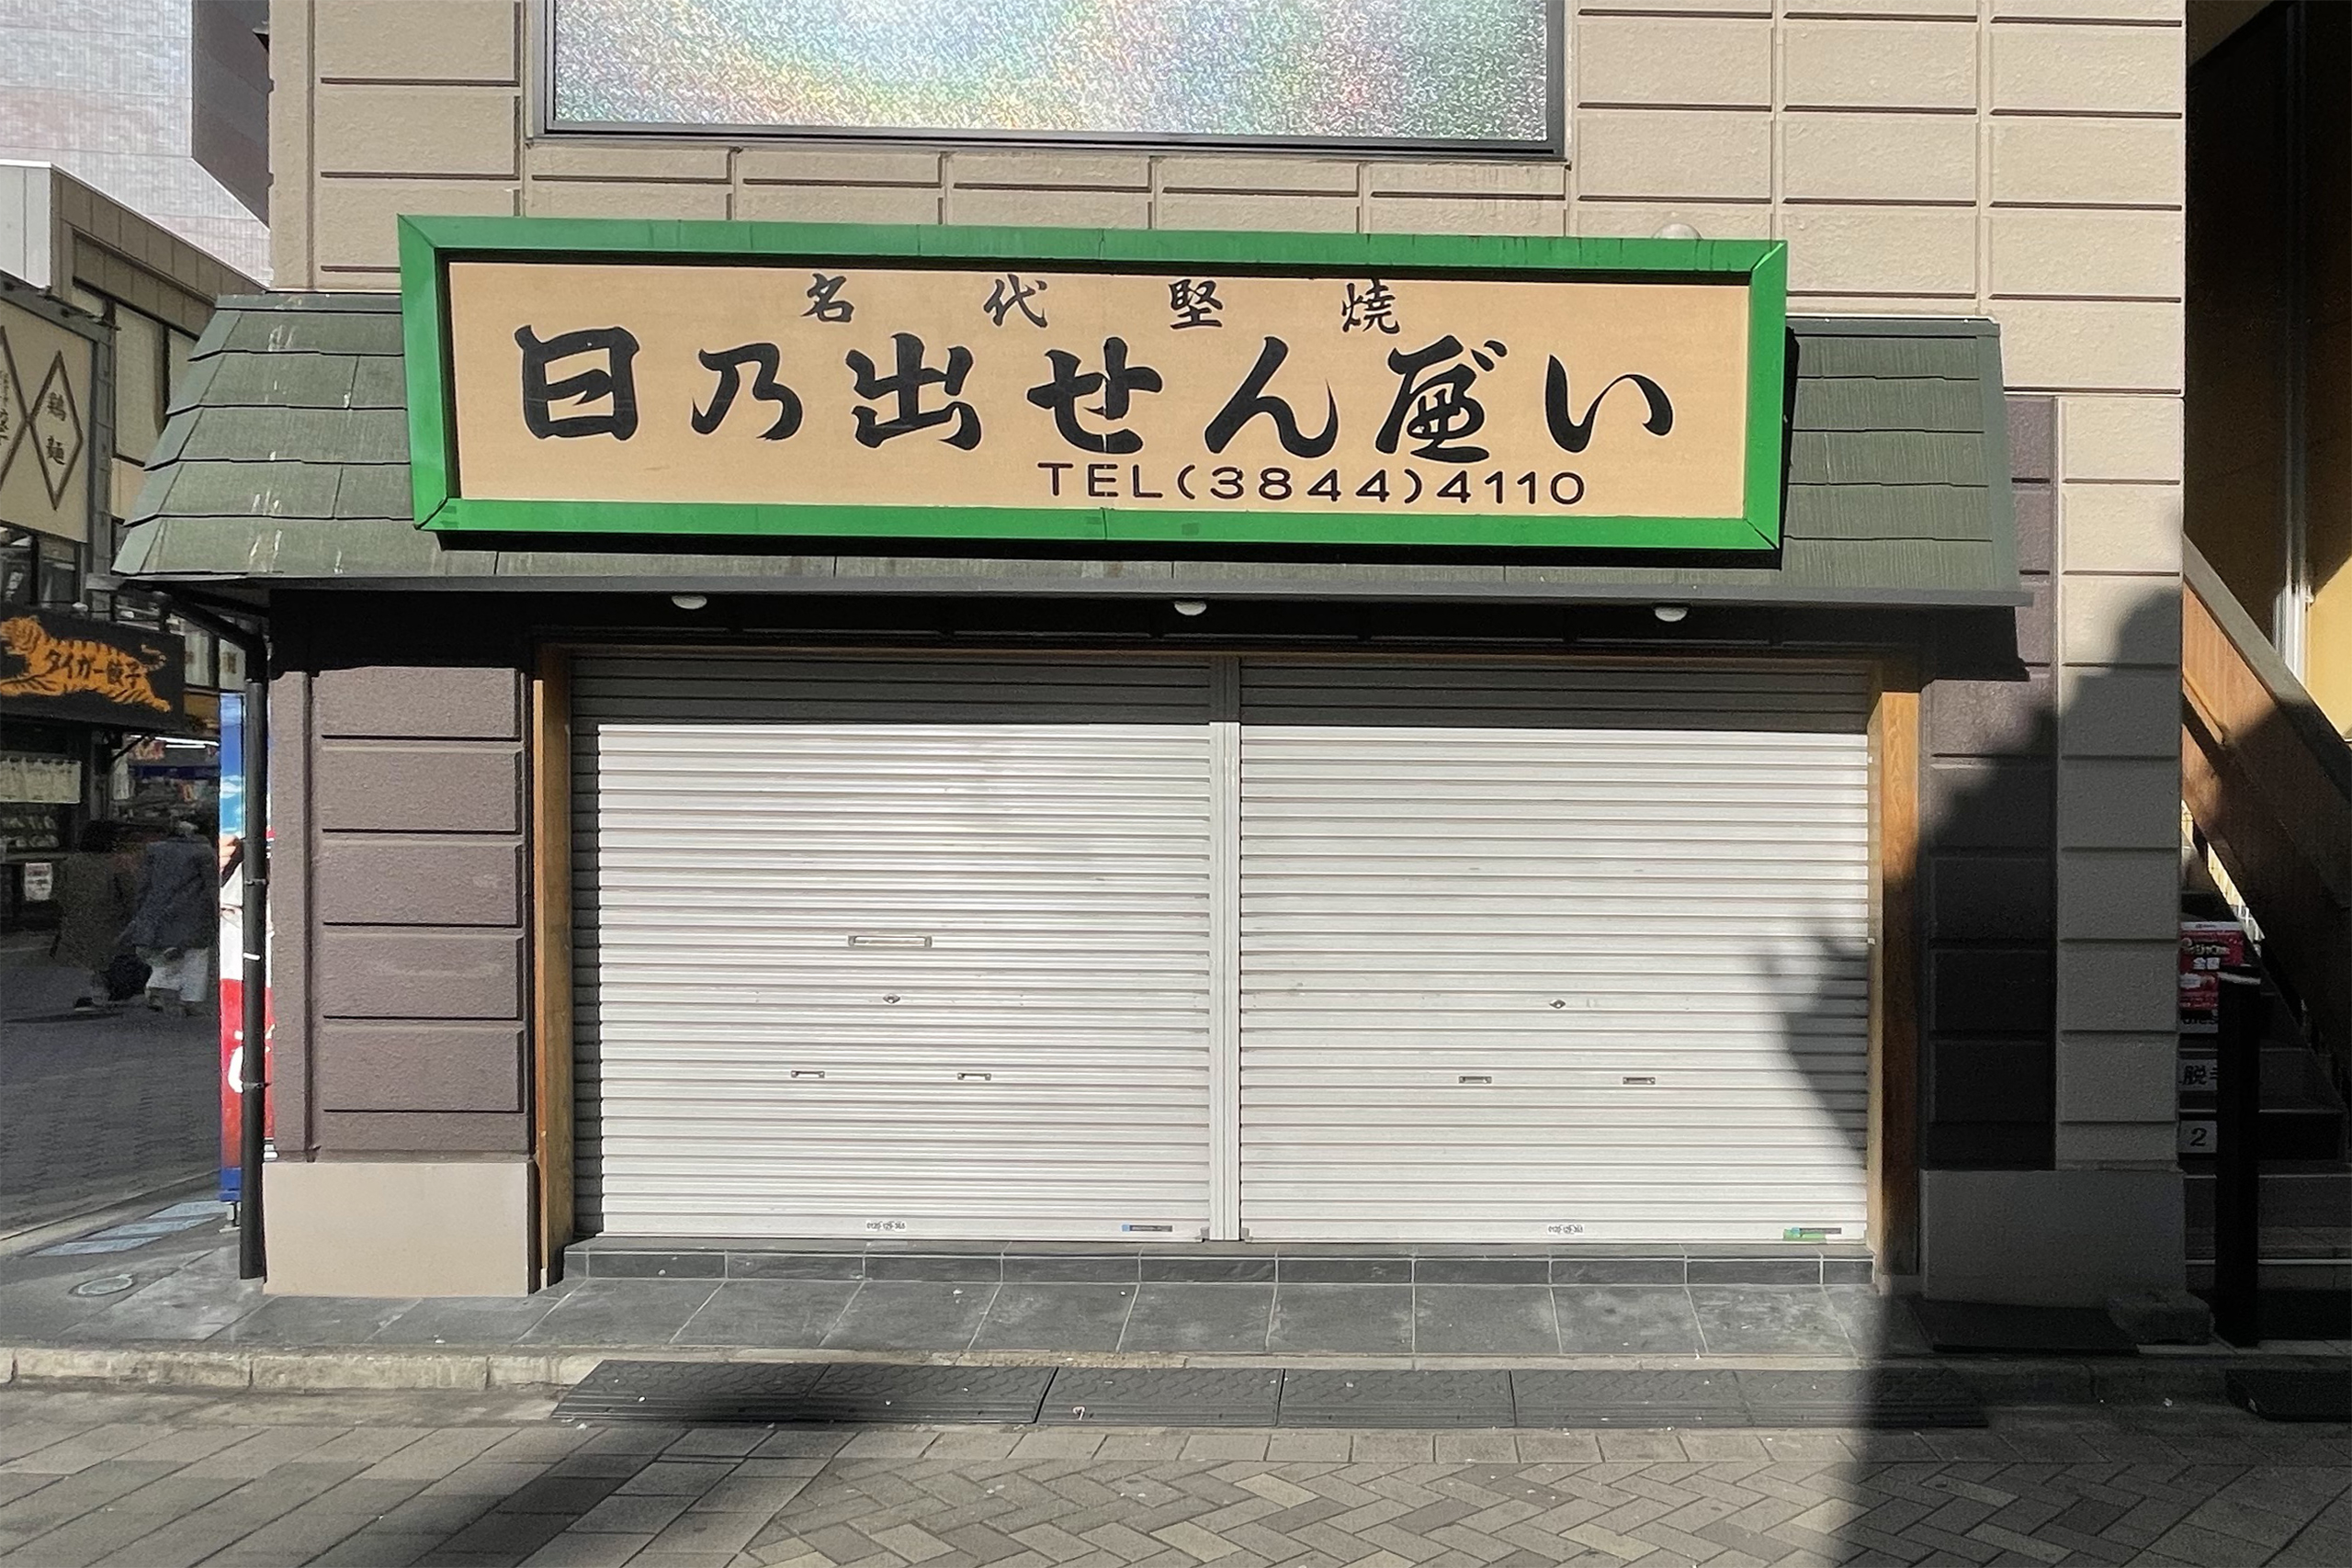 KEN'S CAFE TOKYO 浅草店